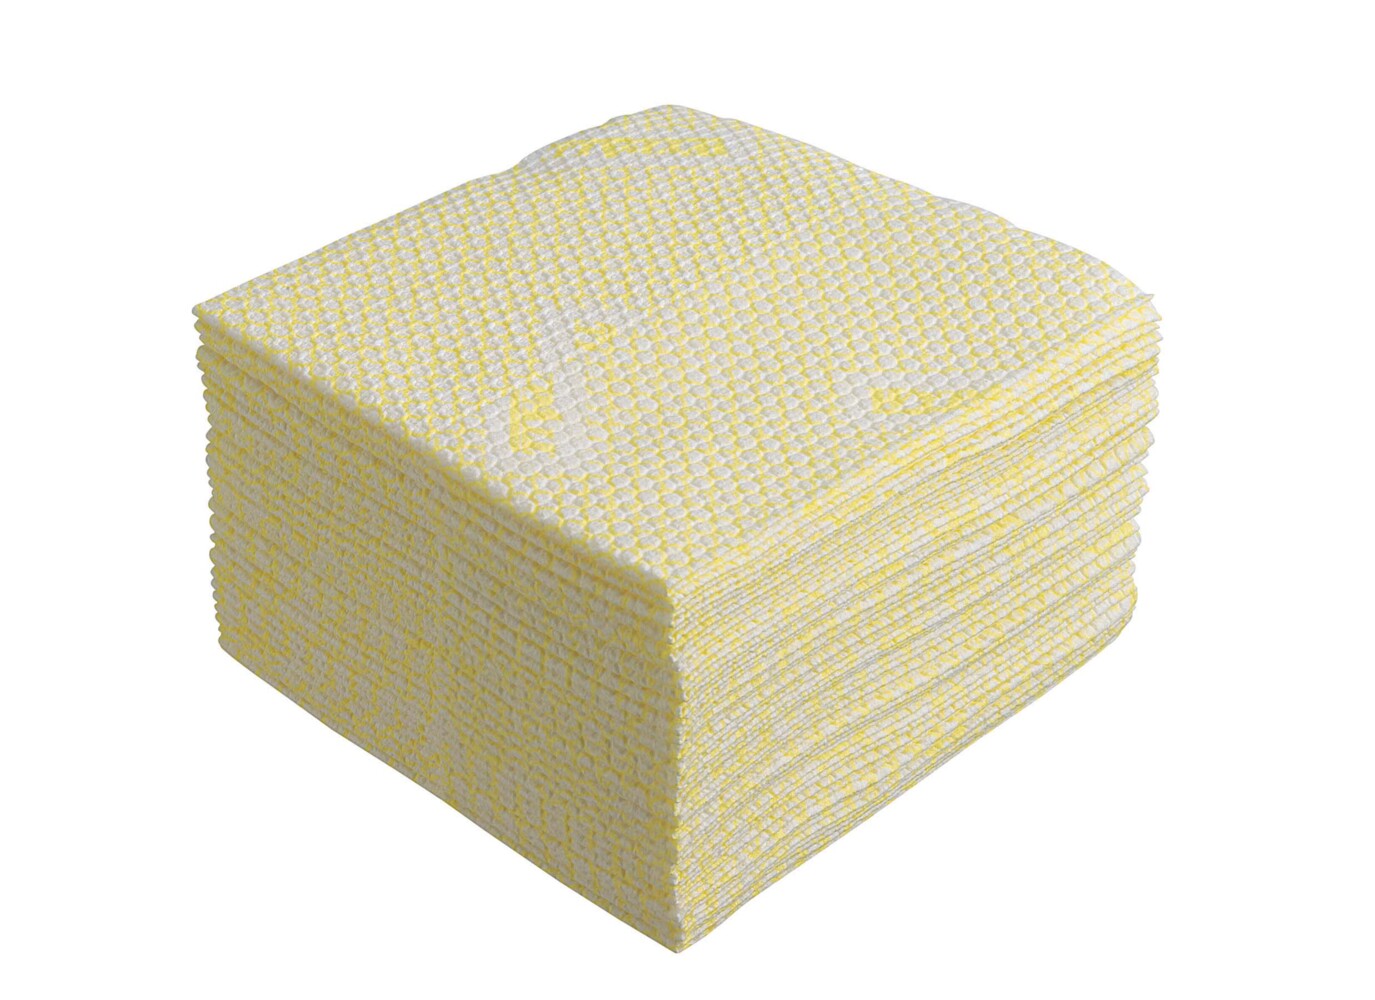 Chiffons WypAll® Plus X80 19164 - 8 paquets de 30 chiffons jaunes, pliés en quatre - 19164